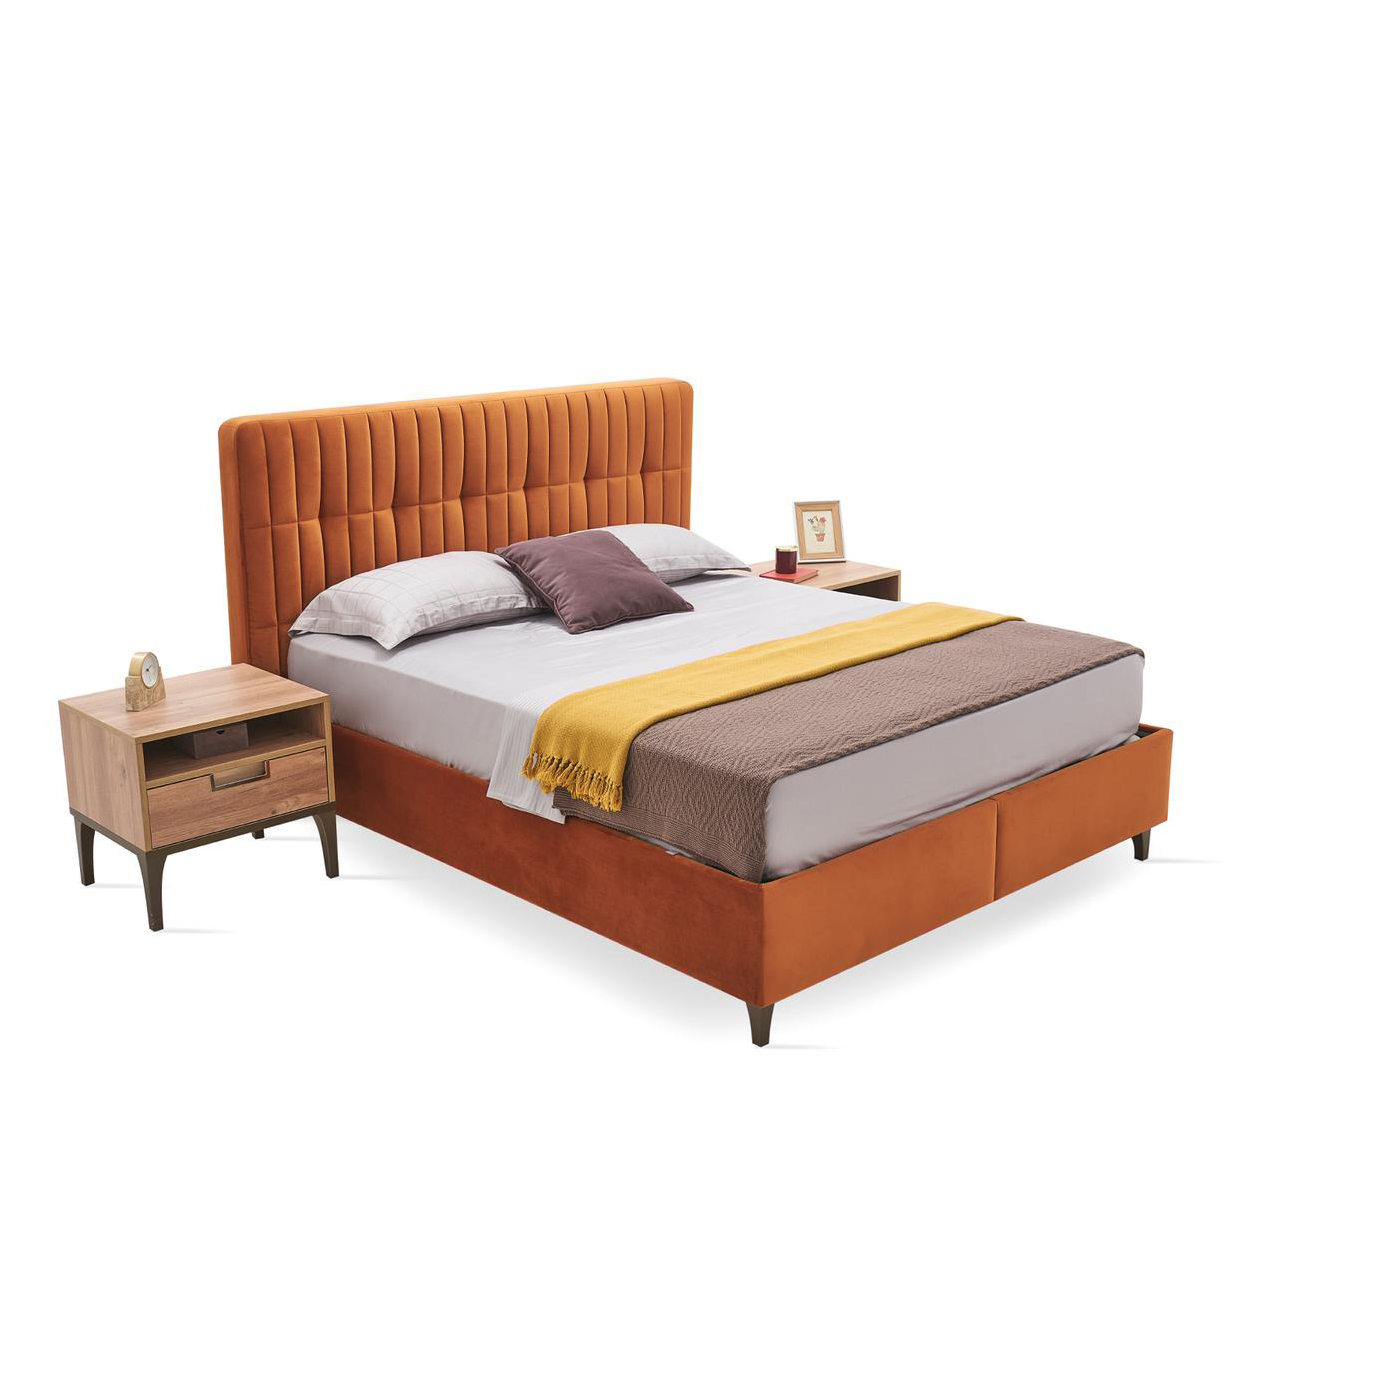 Кровать Enza Home Sona, полуторная, с подъемным механизмом, 150х200 см